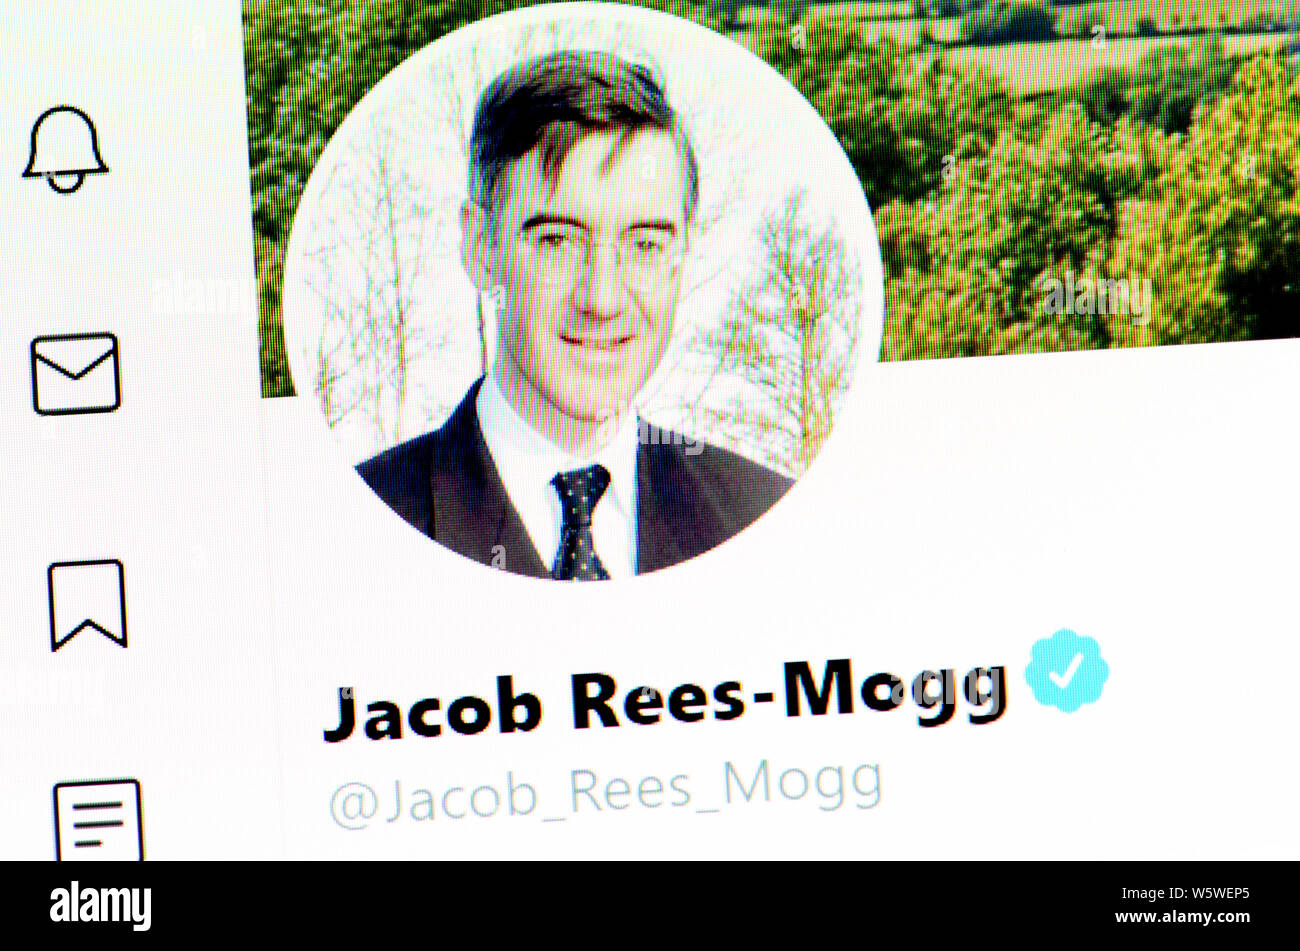 Twitter Seite (Juli 2019) - Jakob Rees-Mogg MP - Herr Präsident des Rates, der Führer des Unterhauses Stockfoto